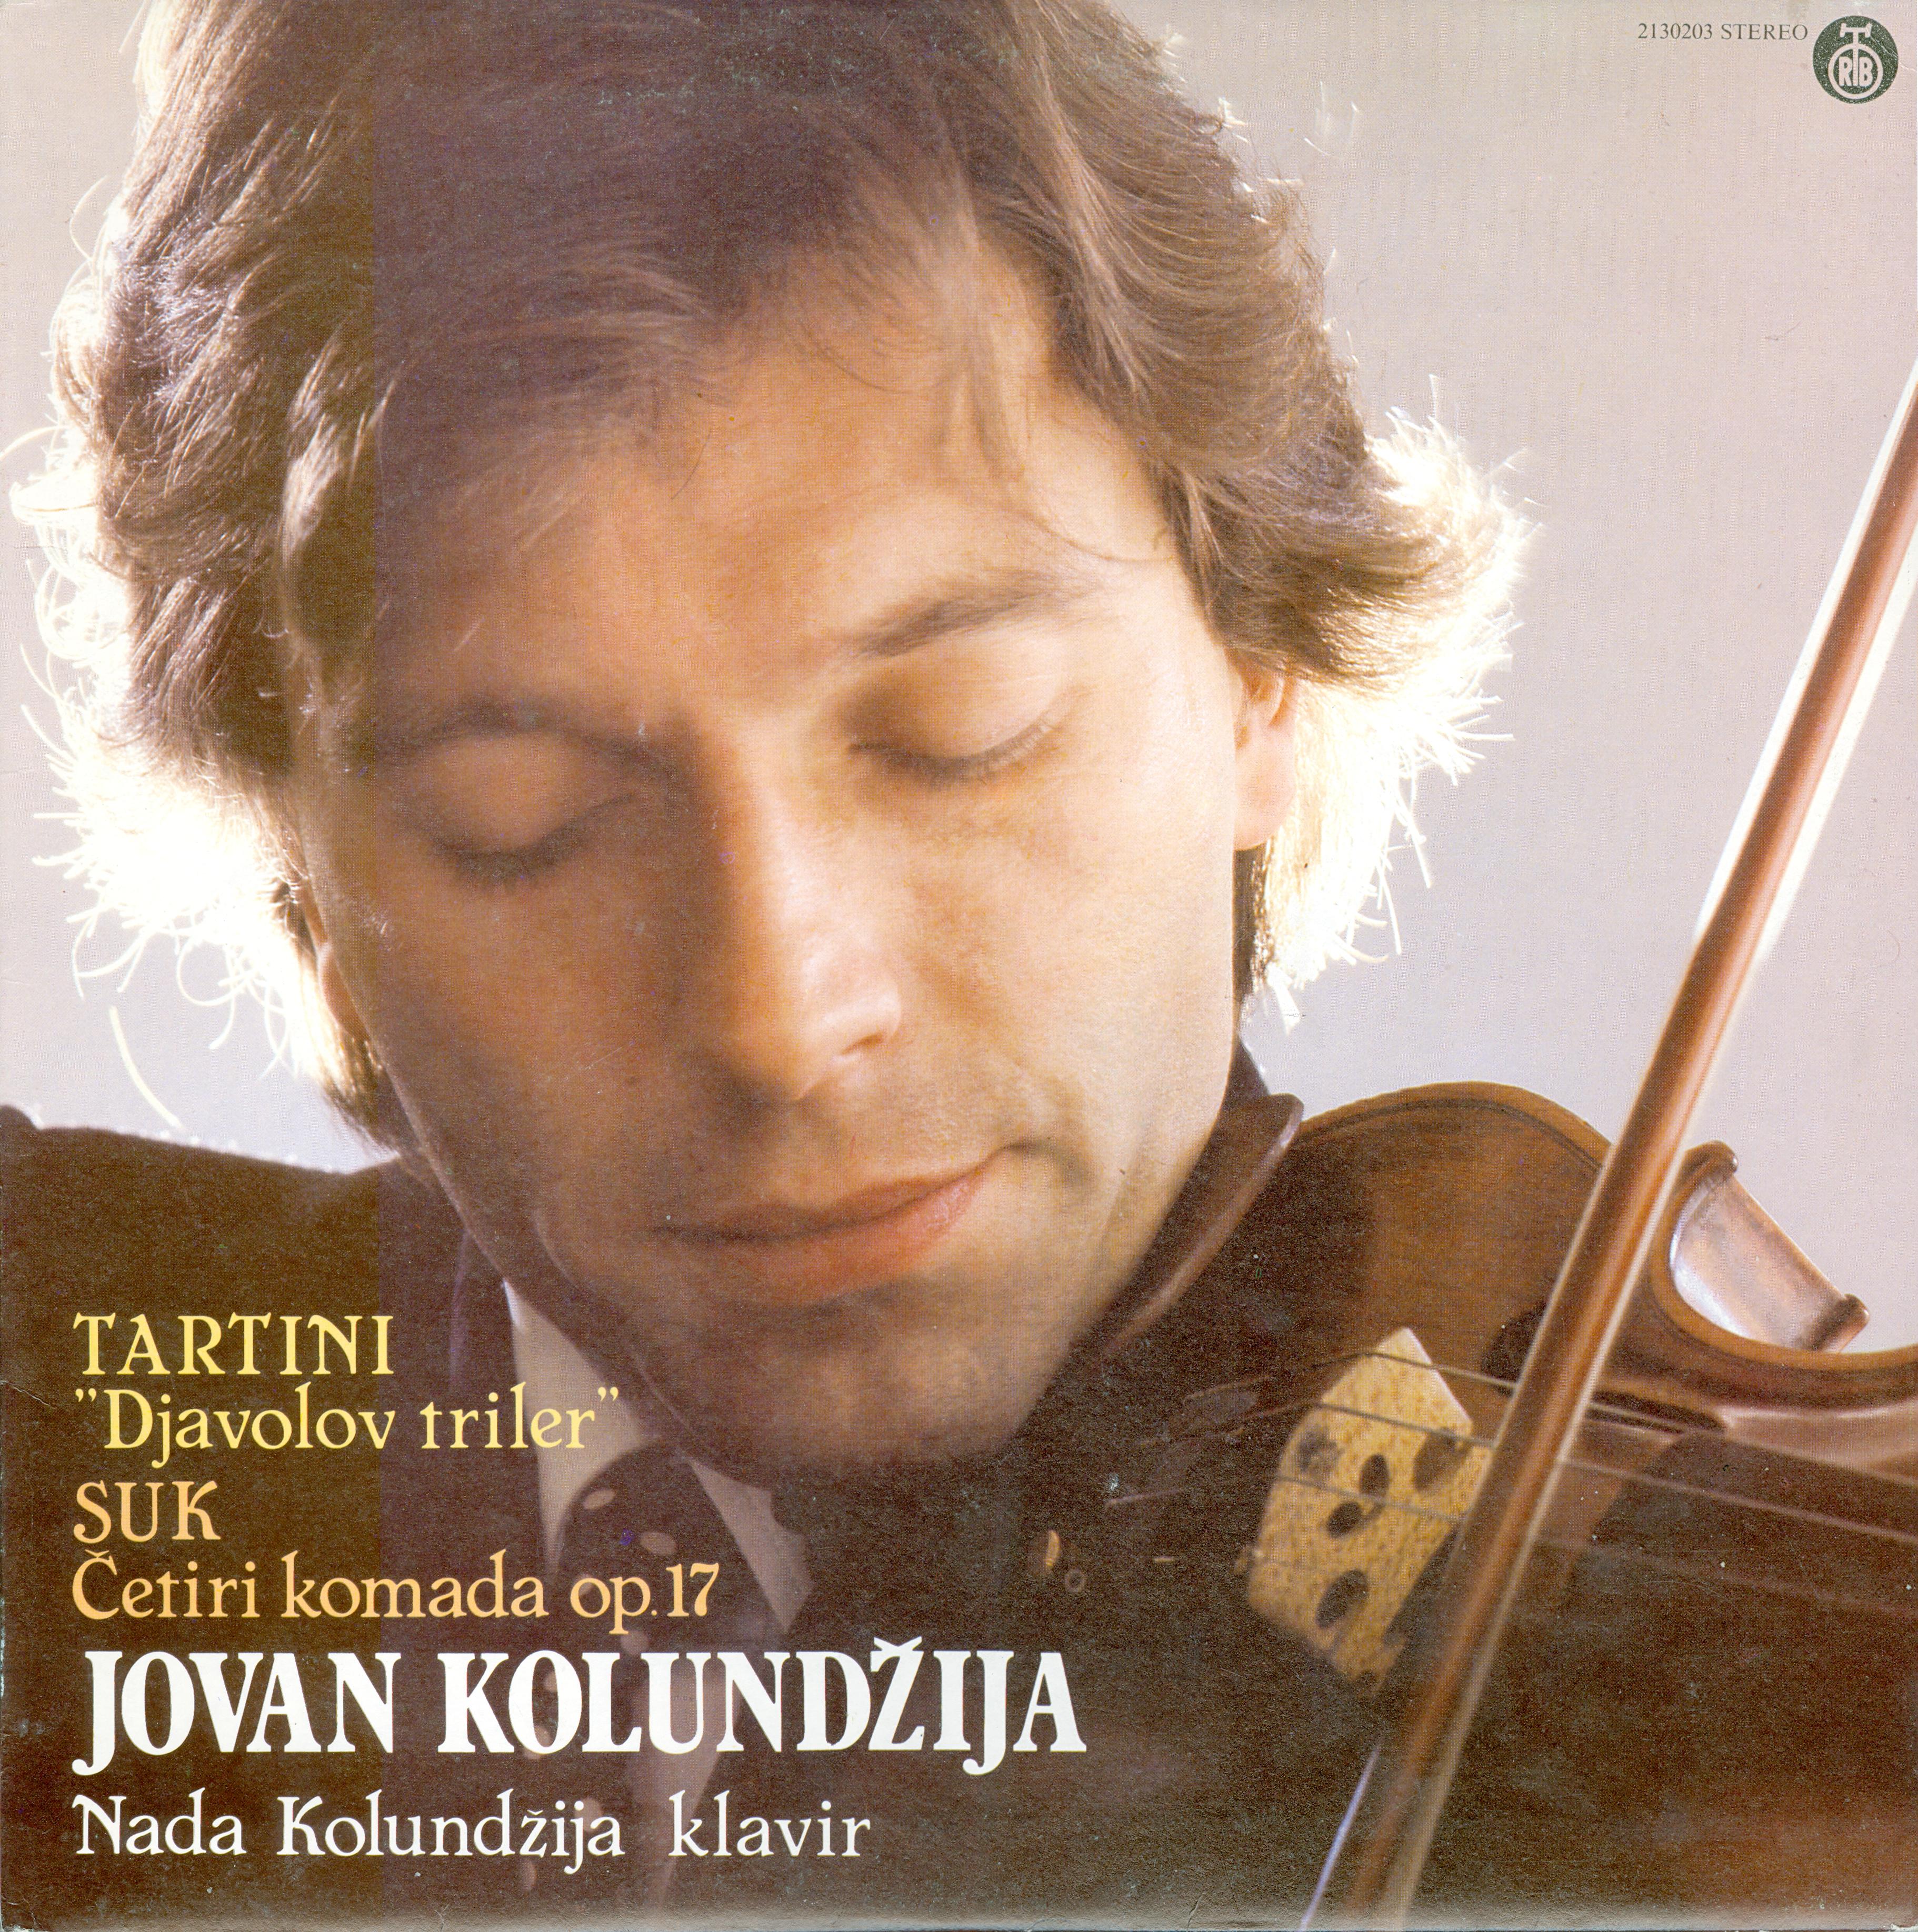 Classic-Violin Piano-Devils Trill Four Pieces for Violin and Piano-Jovan Kolundzija Nada Kolundzija 